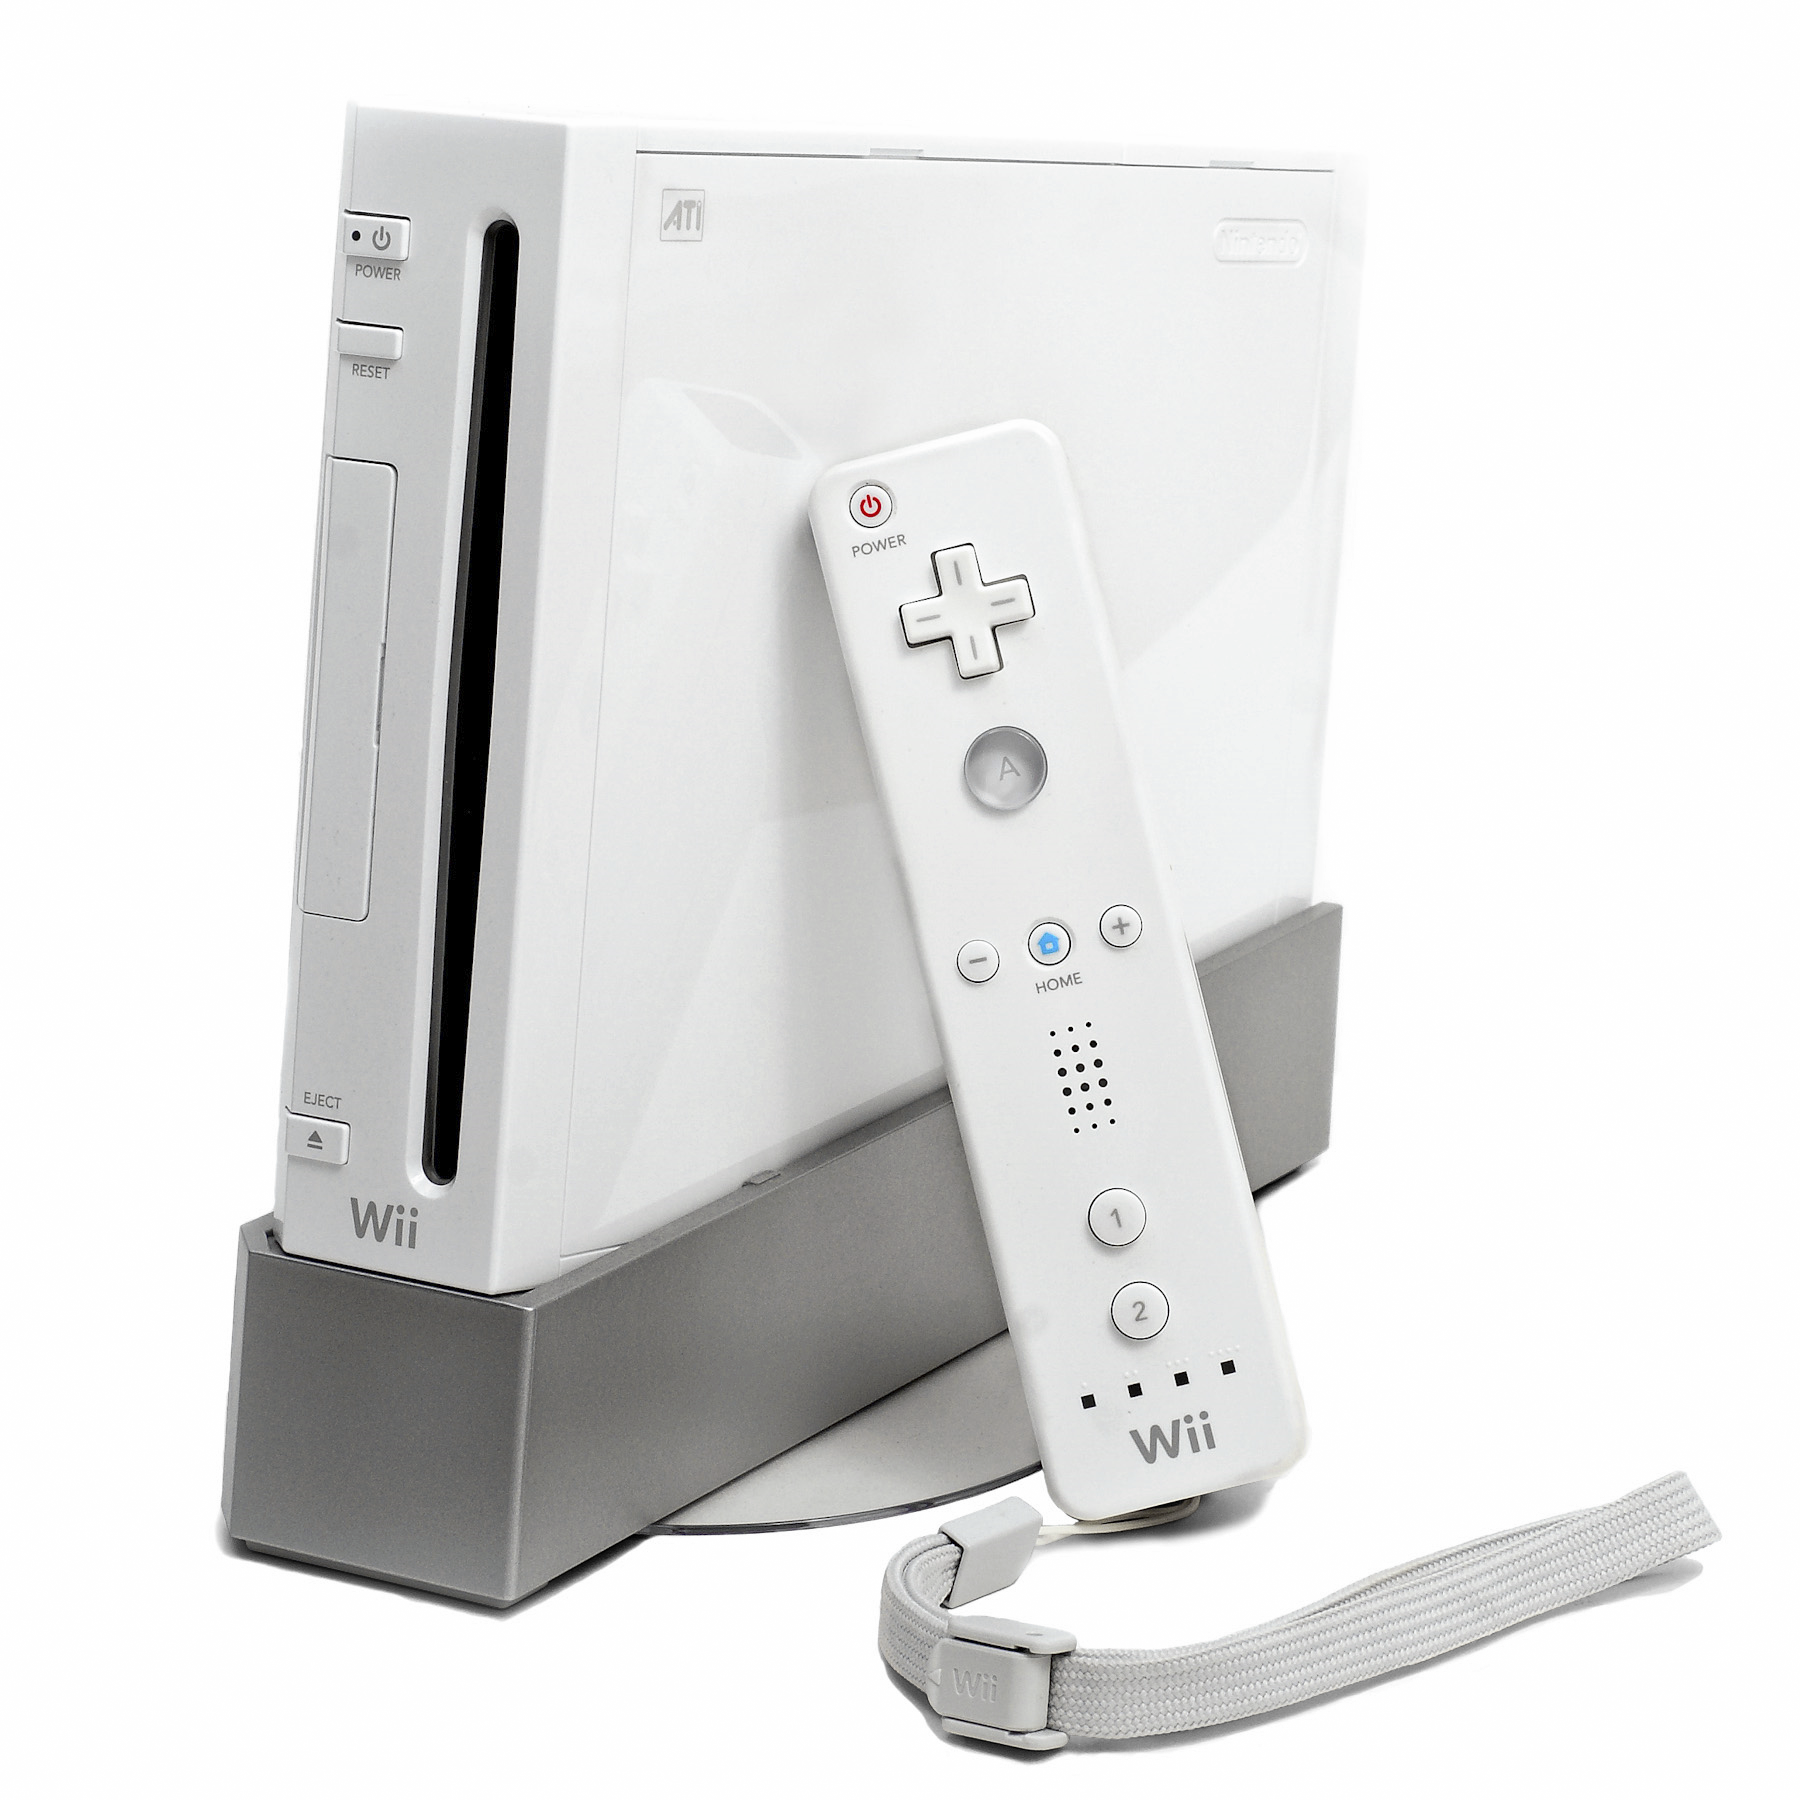 La Nintendo Wii, bien plus appréciée que la Wii Mini